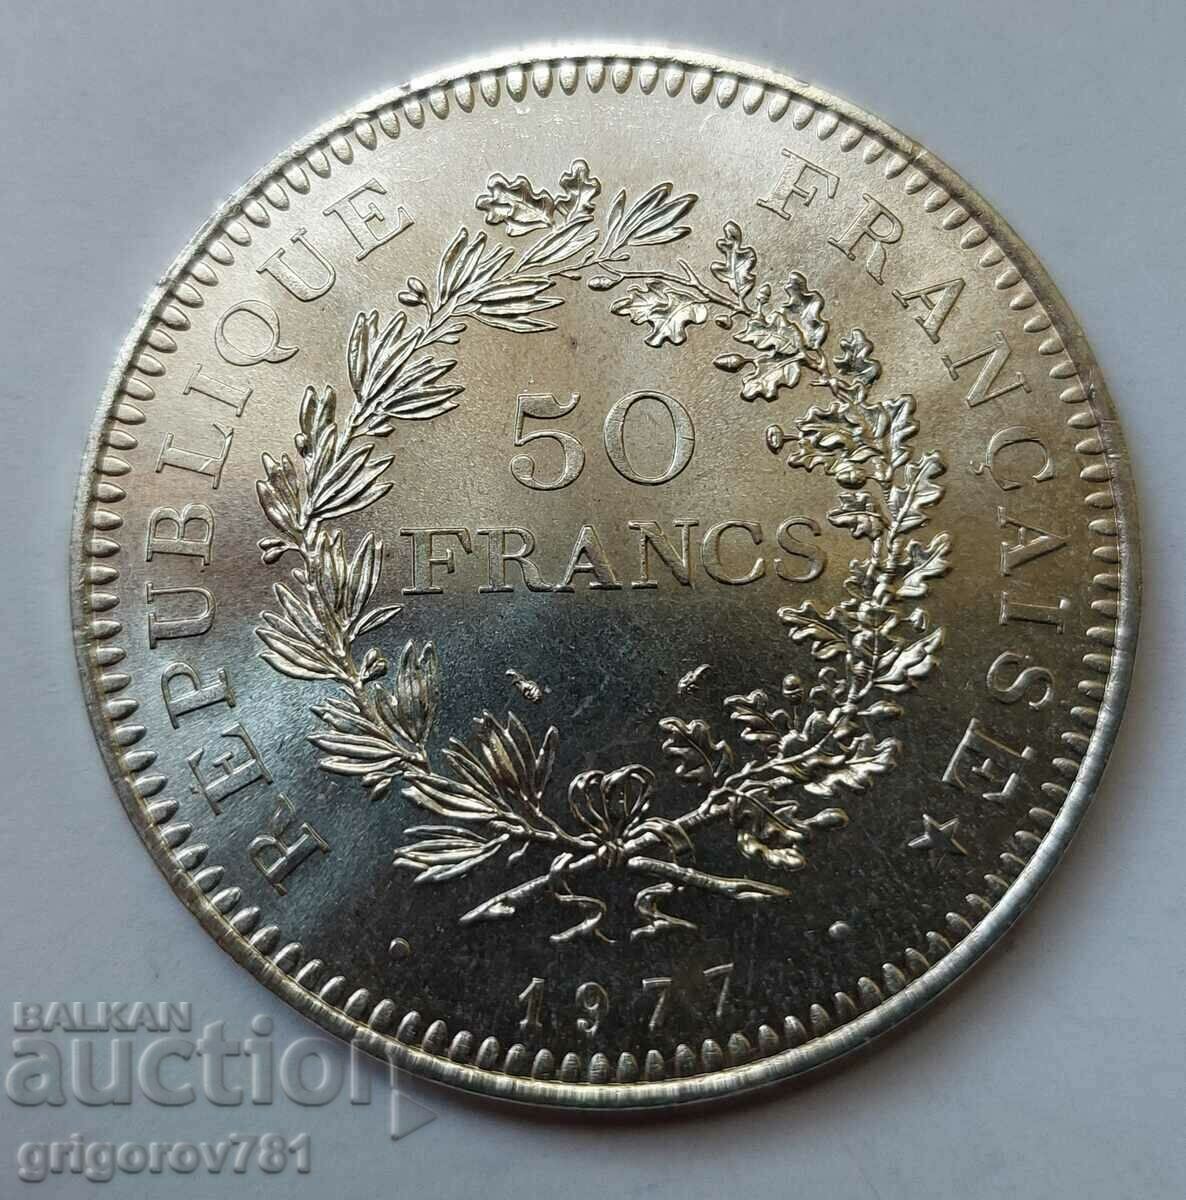 50 Franci Argint Franta 1977 - Moneda de argint #36